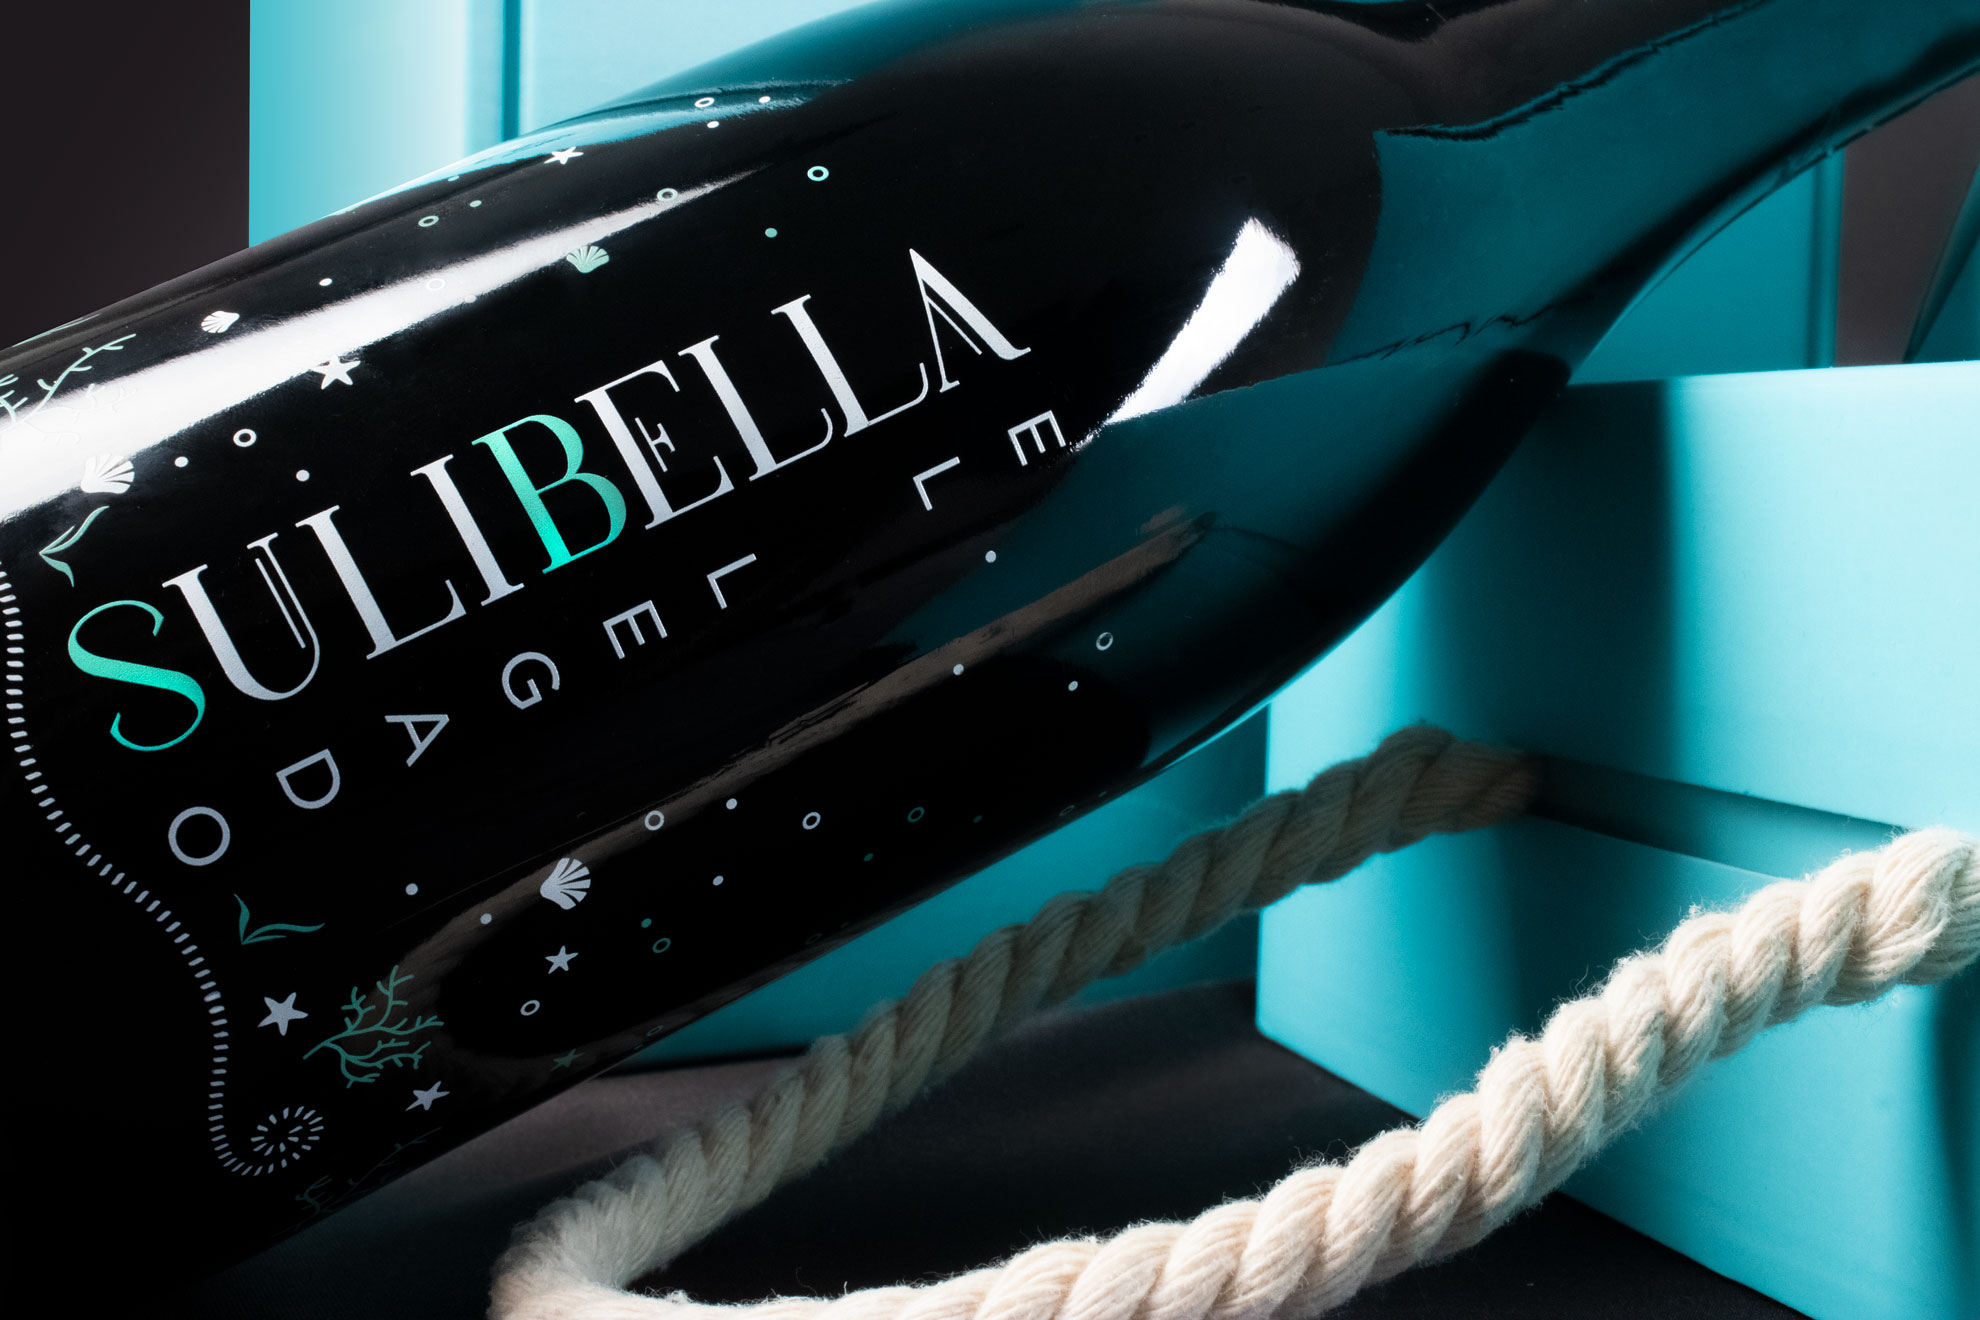 Packaging vino submarino Sulibella